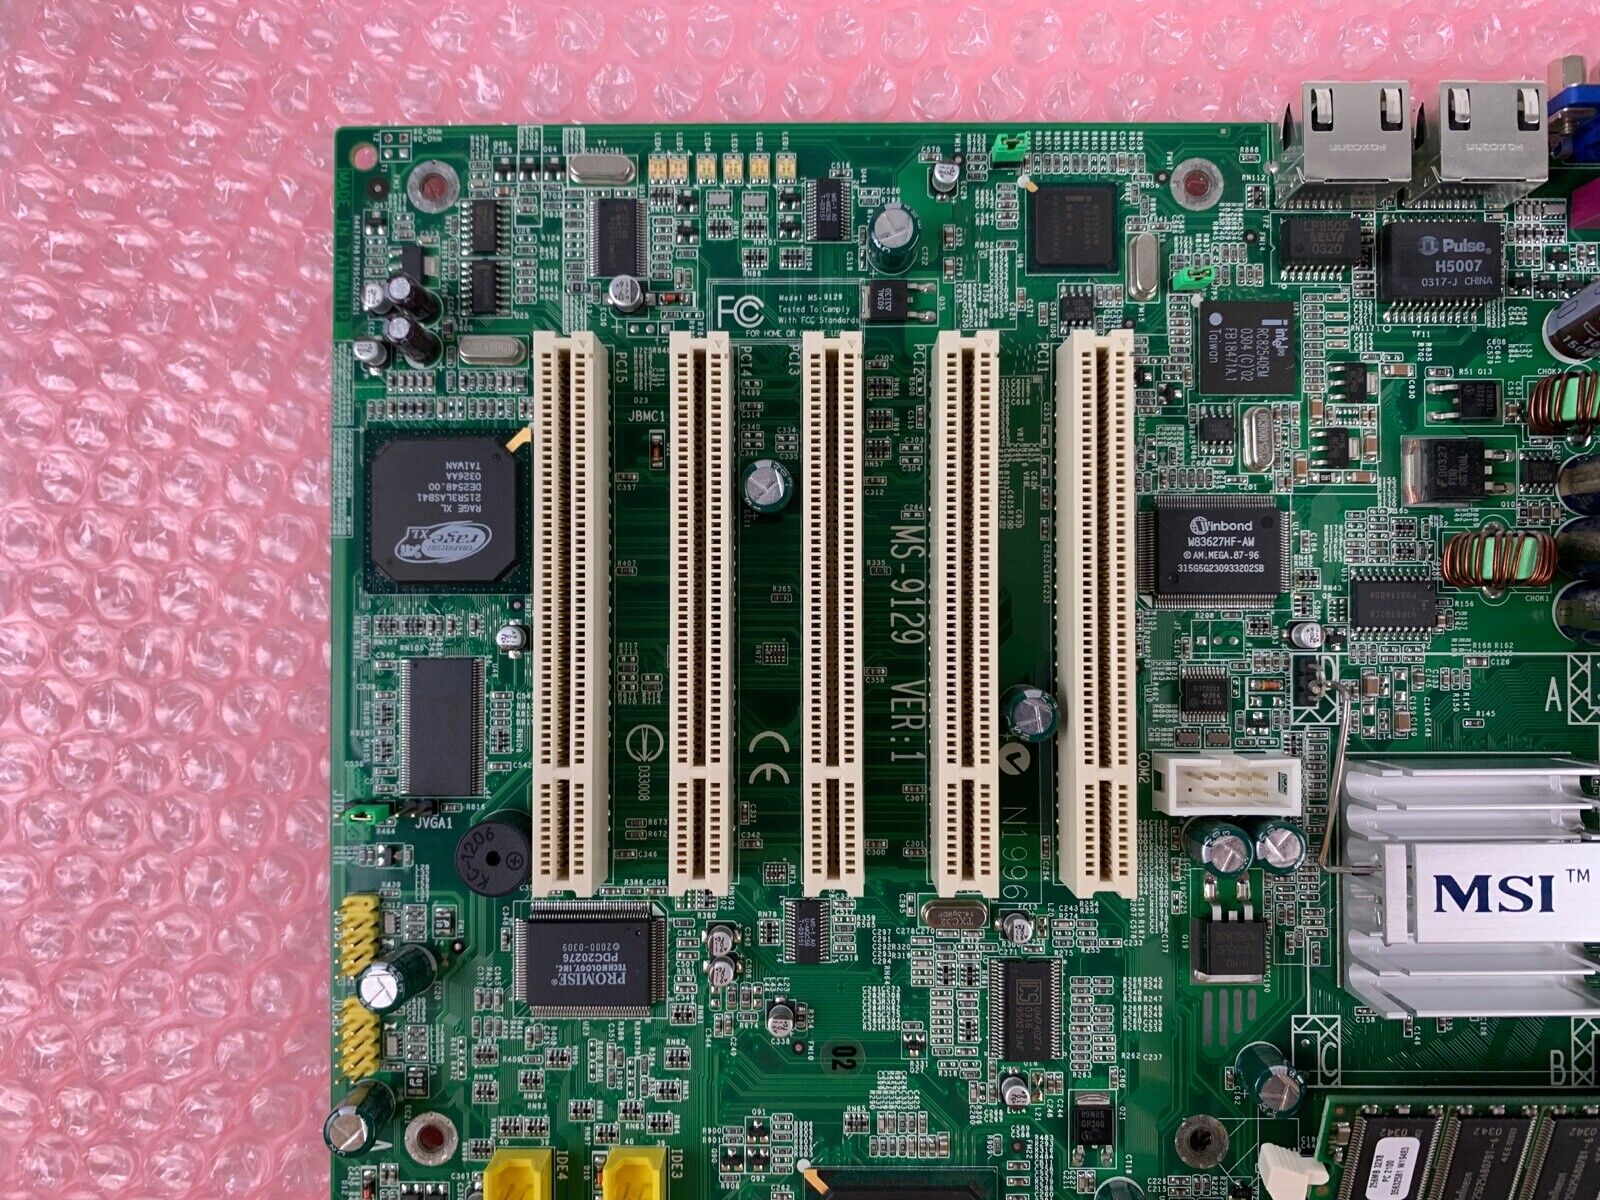 MSI MS-9129 Server Workstation Motherboard Intel Celeron 1.7GHz CPU 256MB RAM